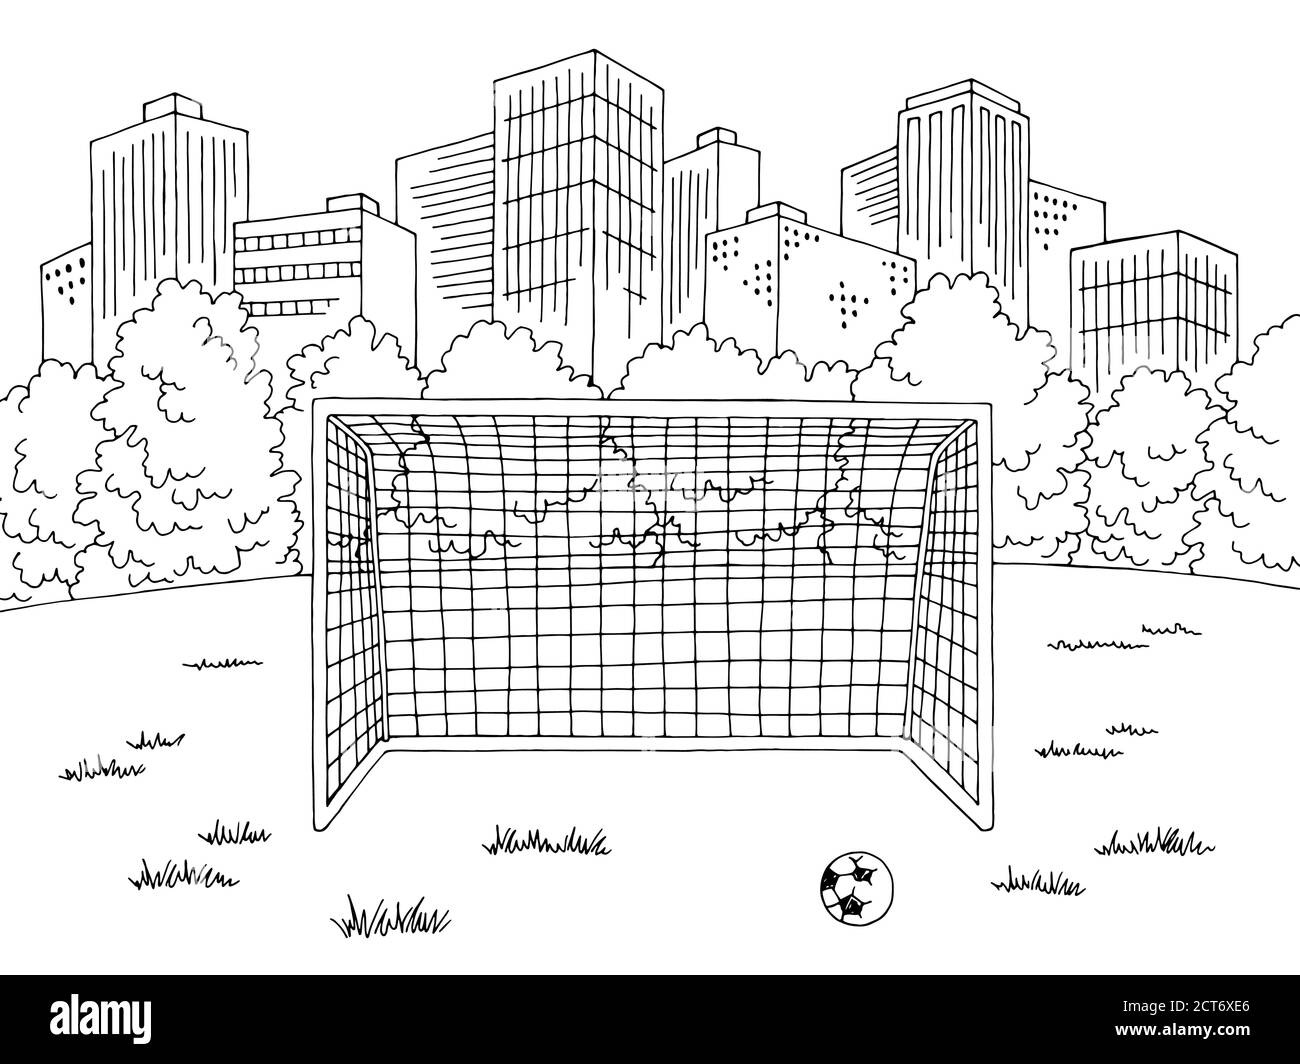 Street soccer calcio sport grafica black white city landscape sketch vettore di illustrazione Illustrazione Vettoriale